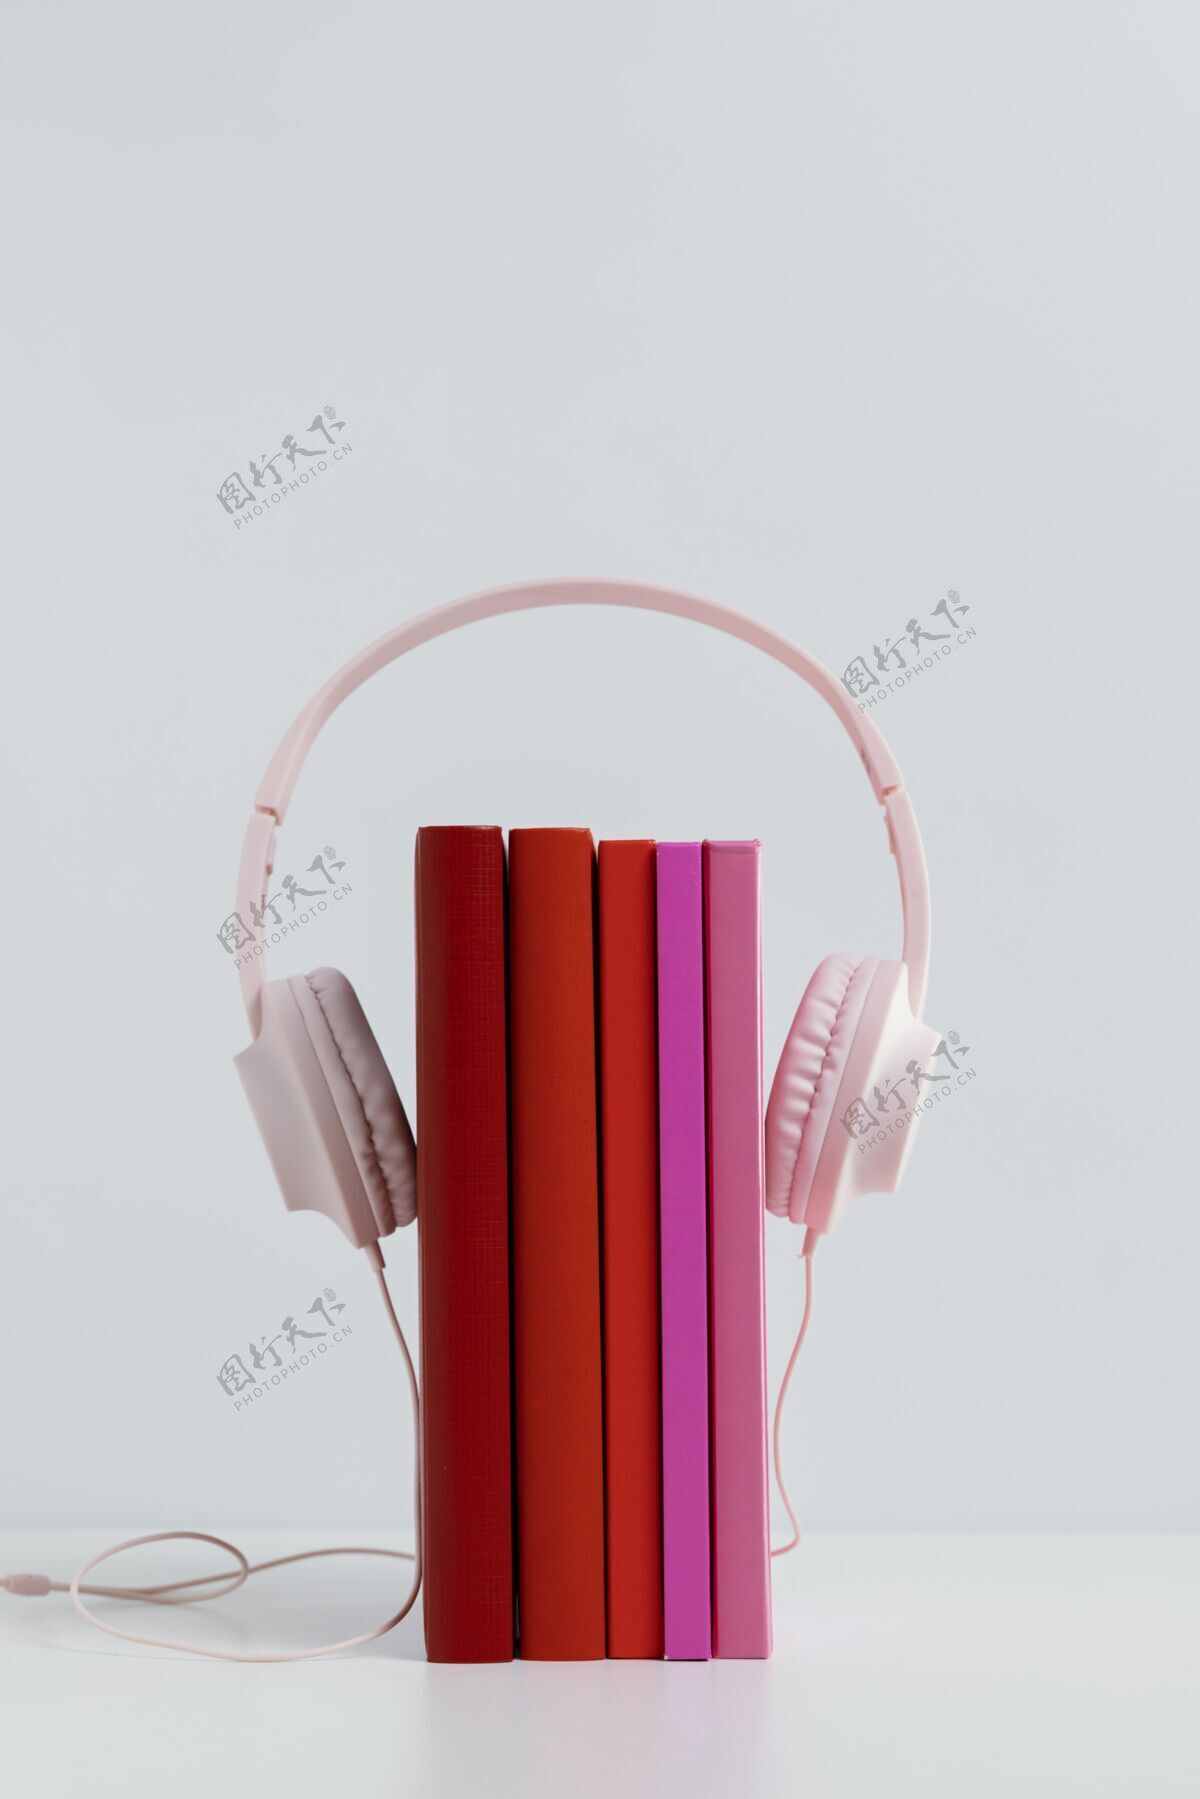 信息带粉色耳机的彩色书籍知识分类文献